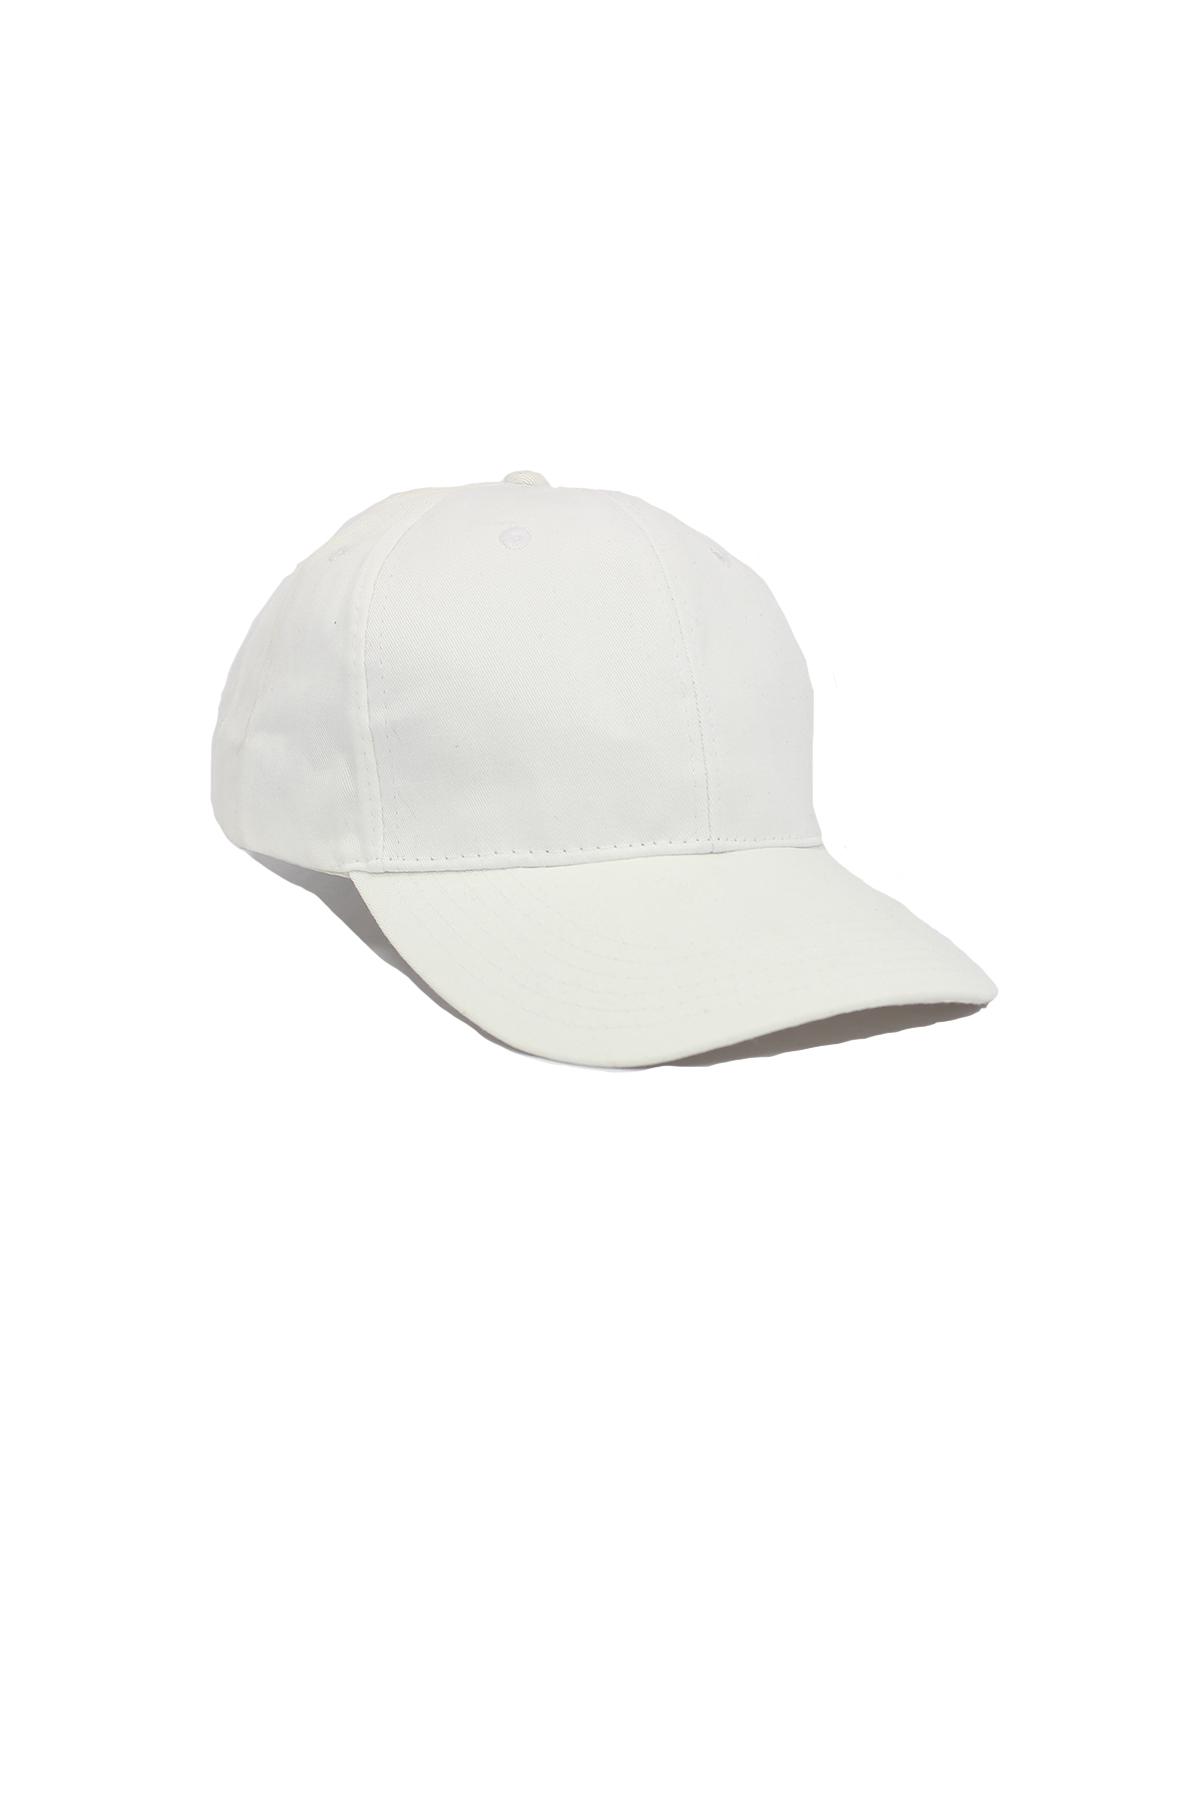 Sade Beyaz (Klemensli) Şapka